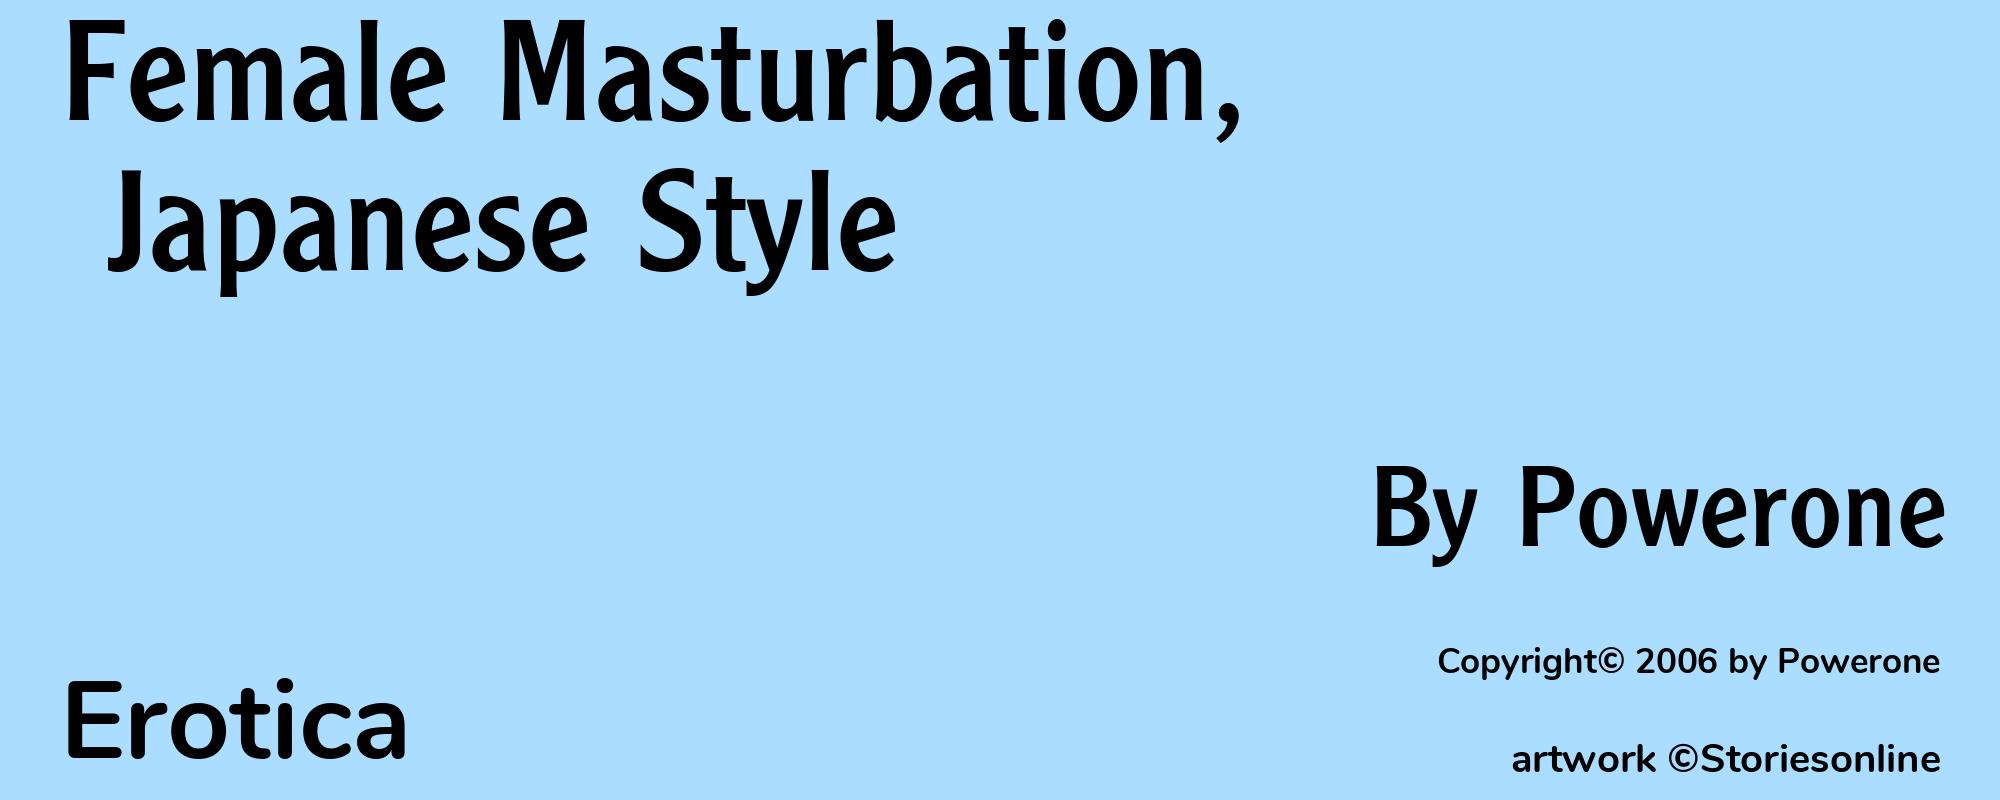 Female Masturbation, Japanese Style - Cover